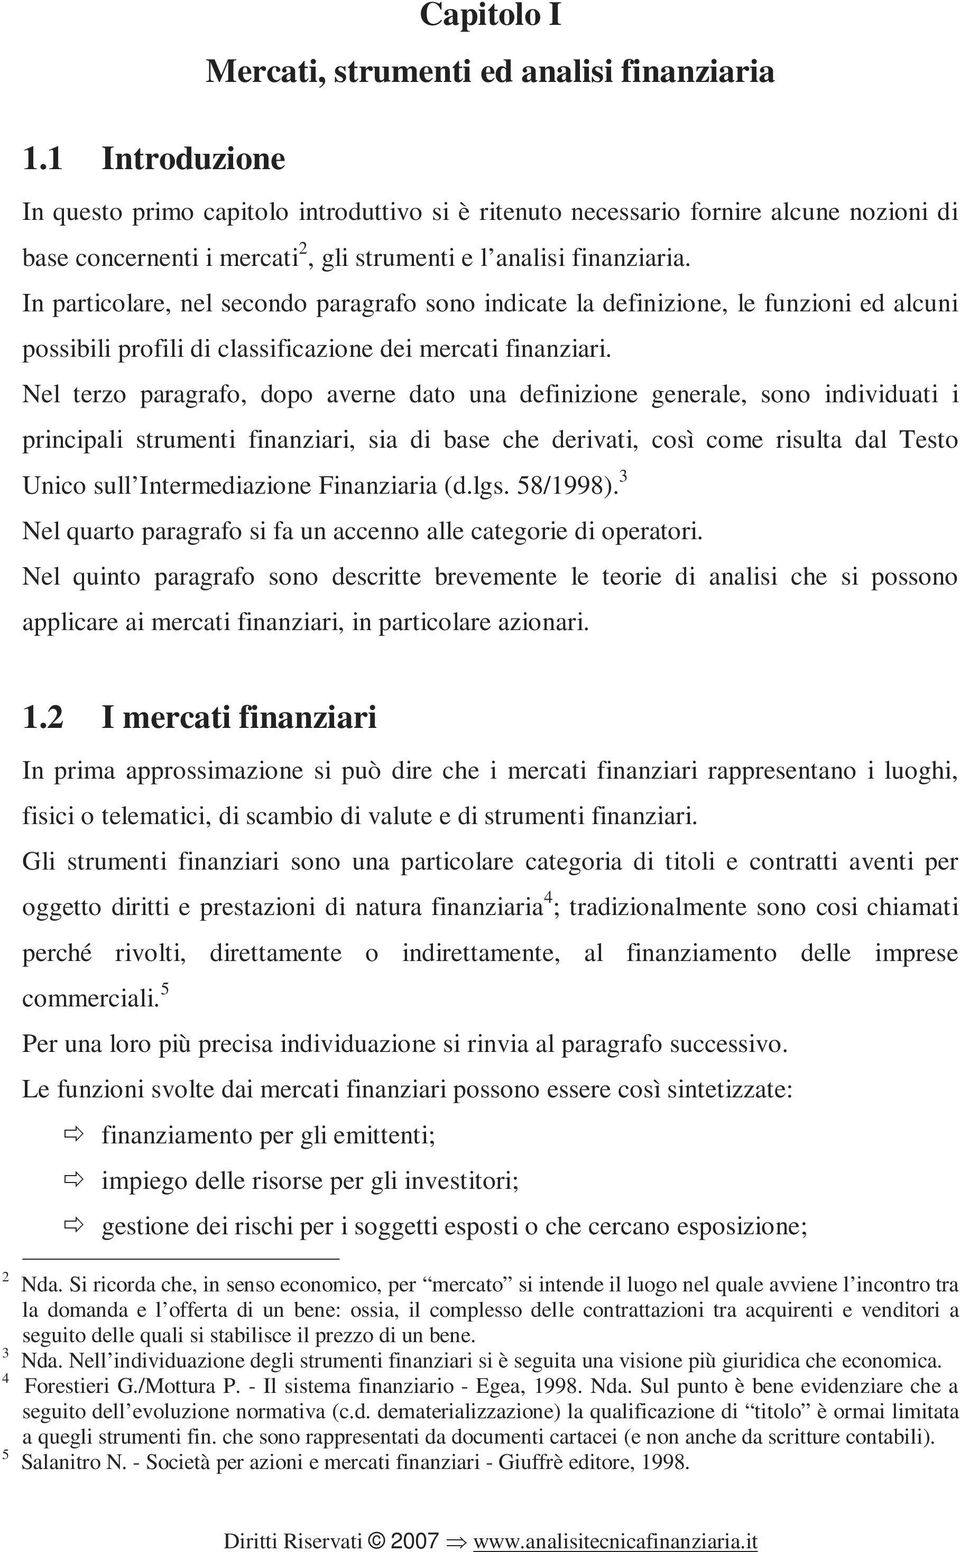 In particolare, nel secondo paragrafo sono indicate la definizione, le funzioni ed alcuni possibili profili di classificazione dei mercati finanziari.